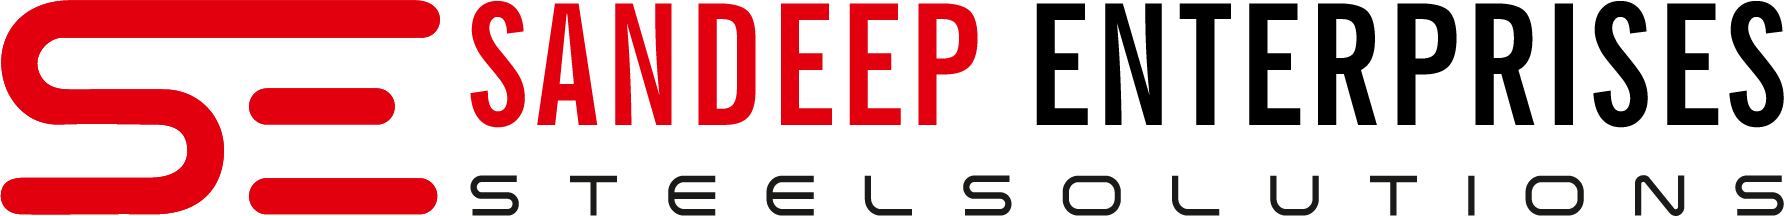 sandeep-enterprises-technical-seminar-logo